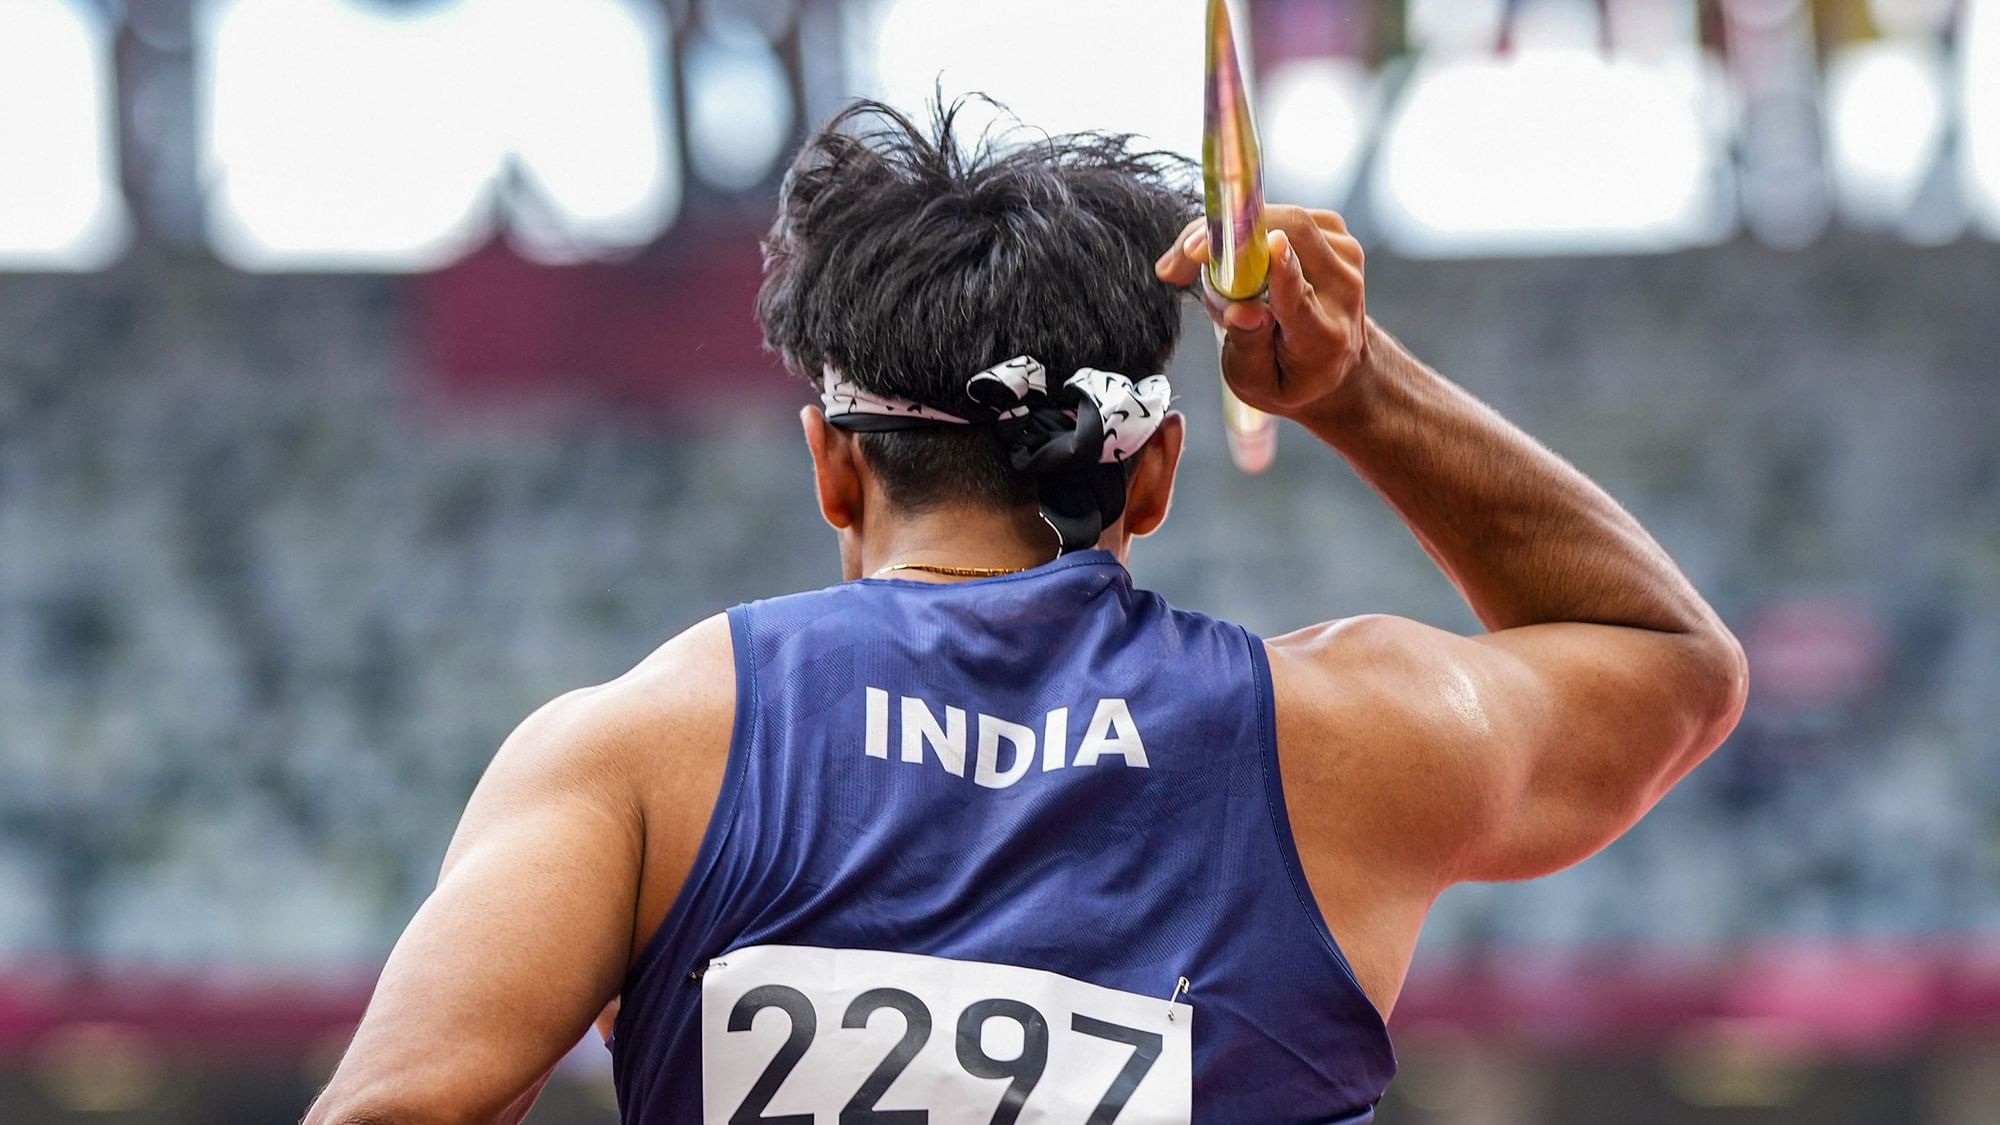 2020 Tokyo Olympics Watch VIDEO Javelin Thrower Neeraj Chopra Tops